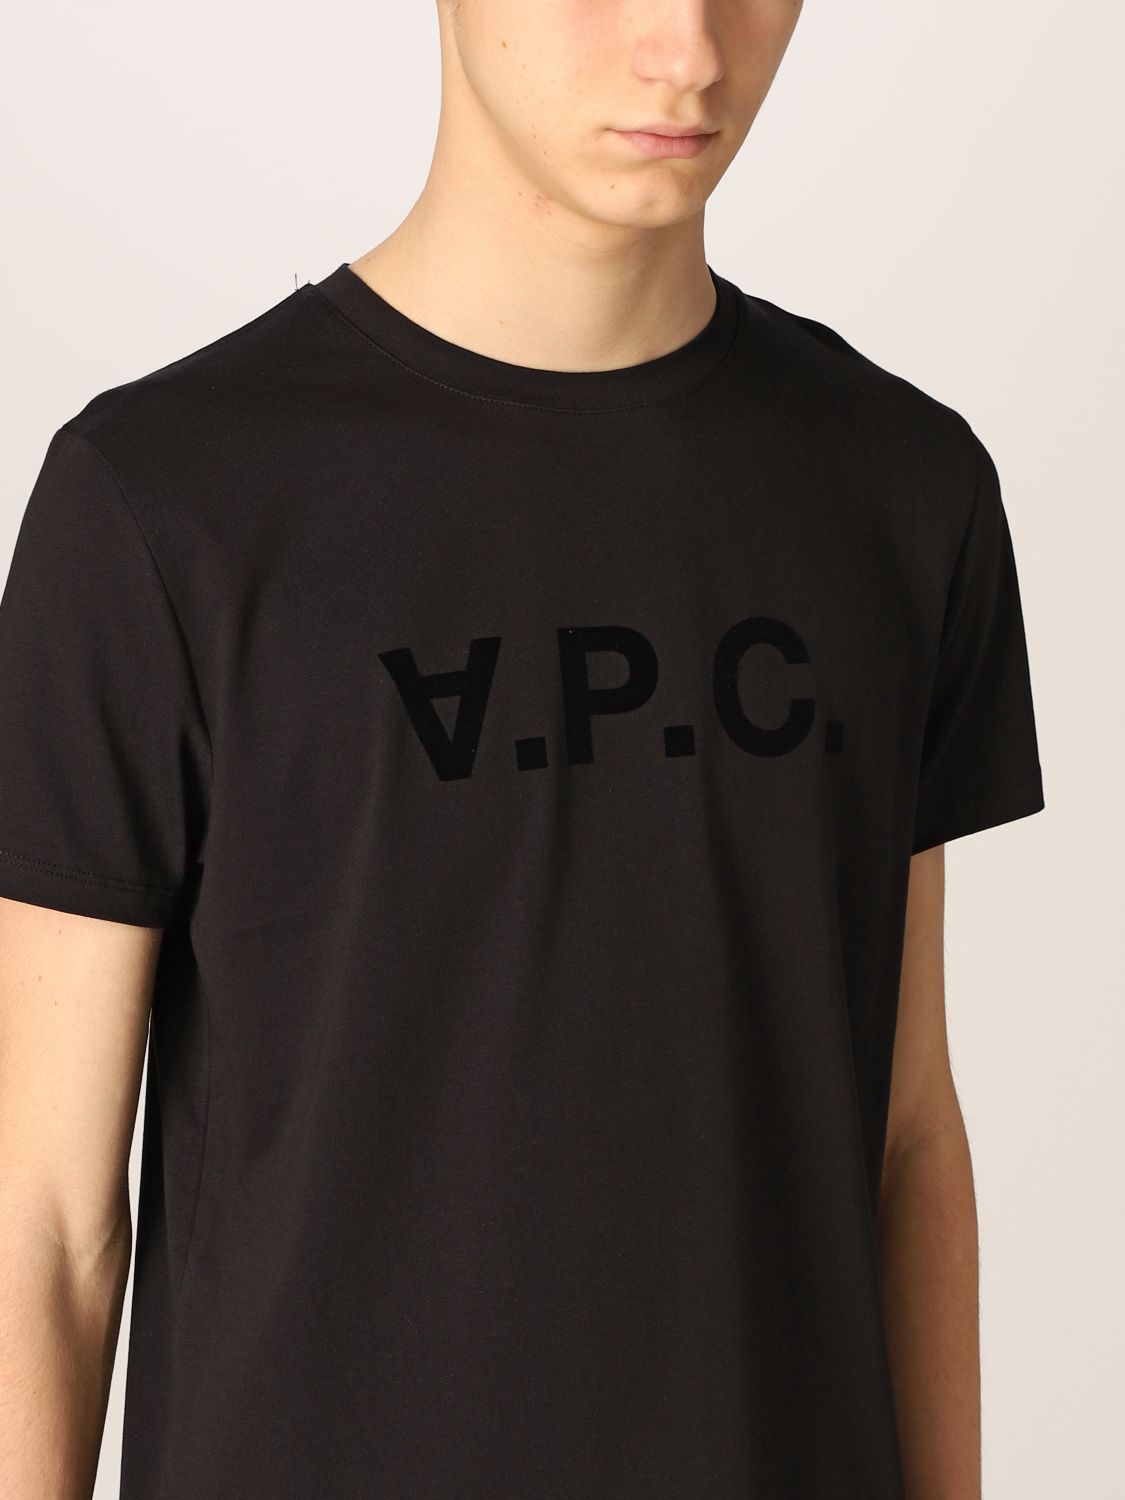 T-shirt A.p.c.: A.p.c. t-shirt in cotton with logo black 4